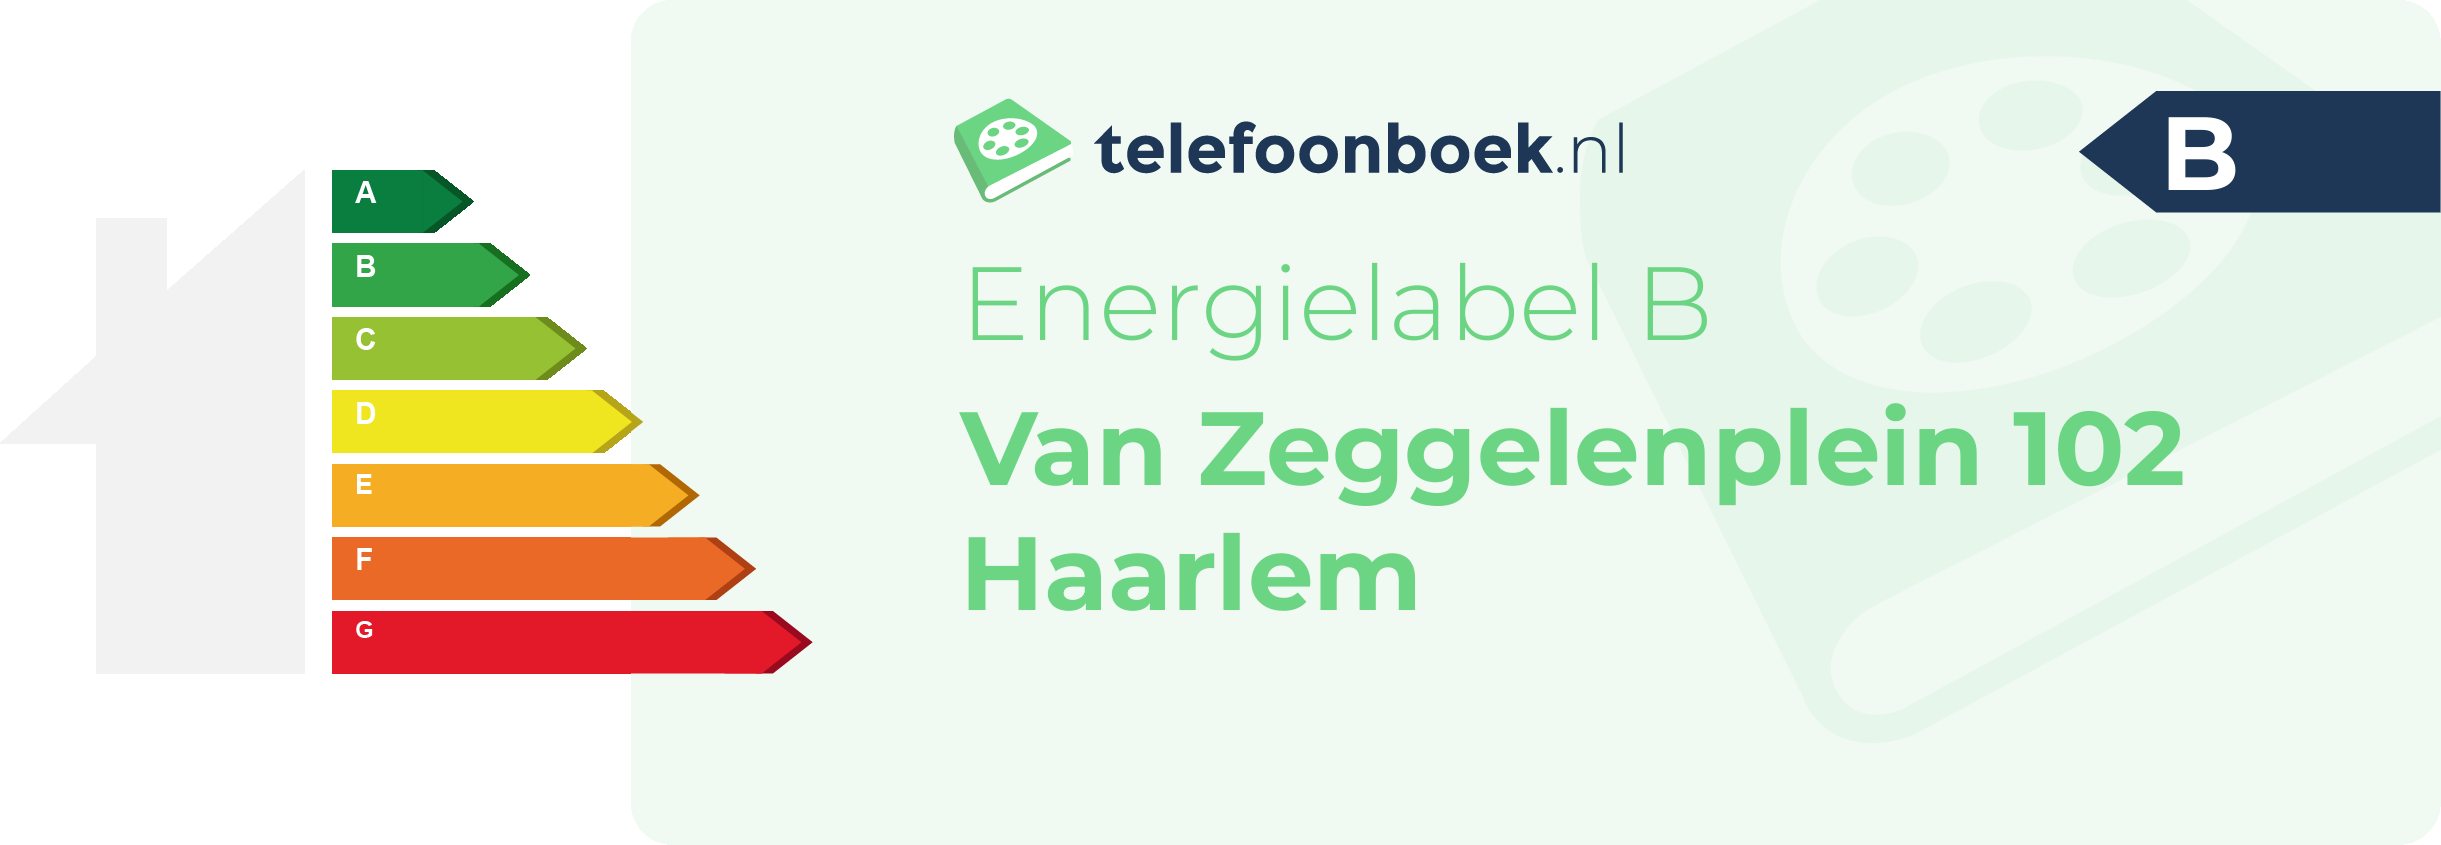 Energielabel Van Zeggelenplein 102 Haarlem